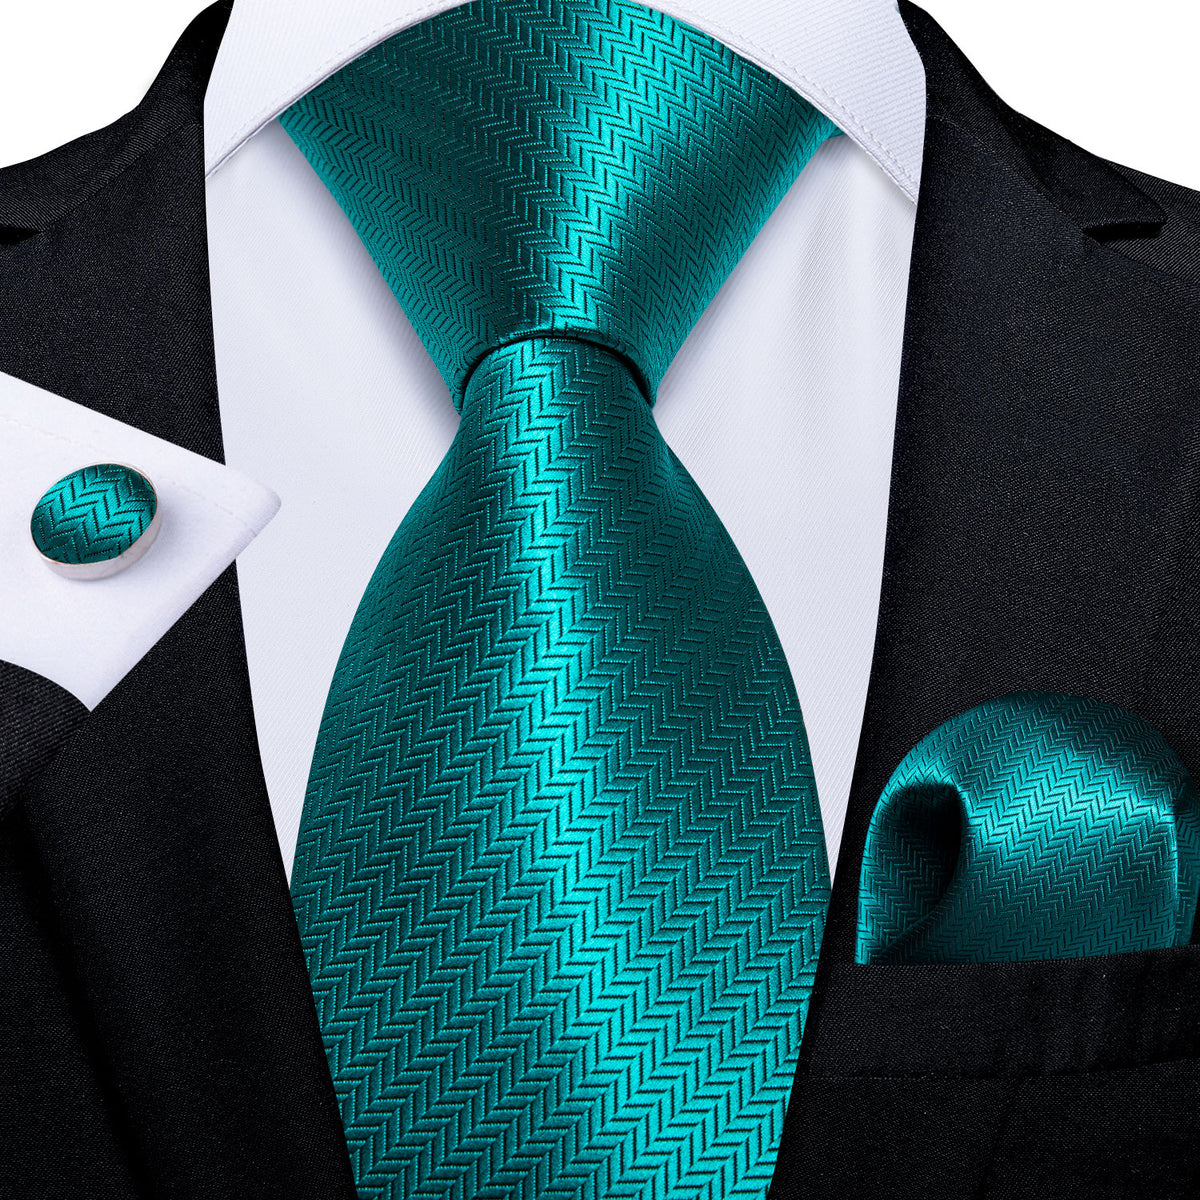 Details about   DiBanGu Green Teal Paisley Solid Striped Mens Silk Tie Necktie Hanky Cufflink